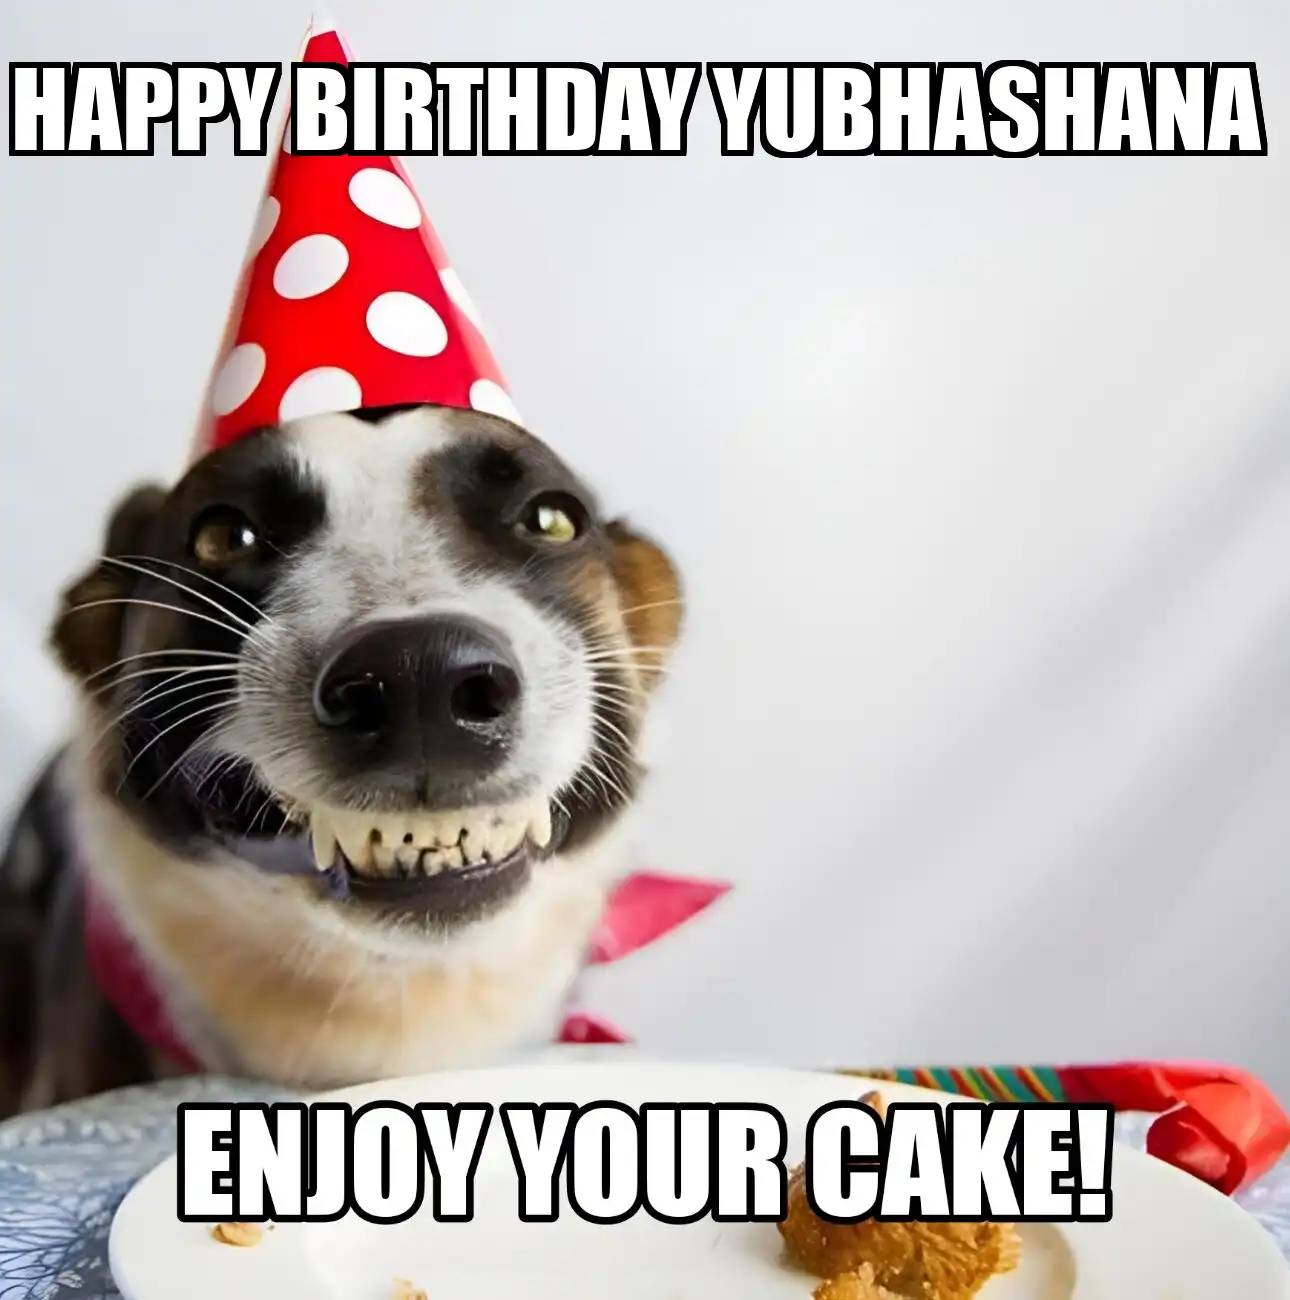 Happy Birthday Yubhashana Enjoy Your Cake Dog Meme